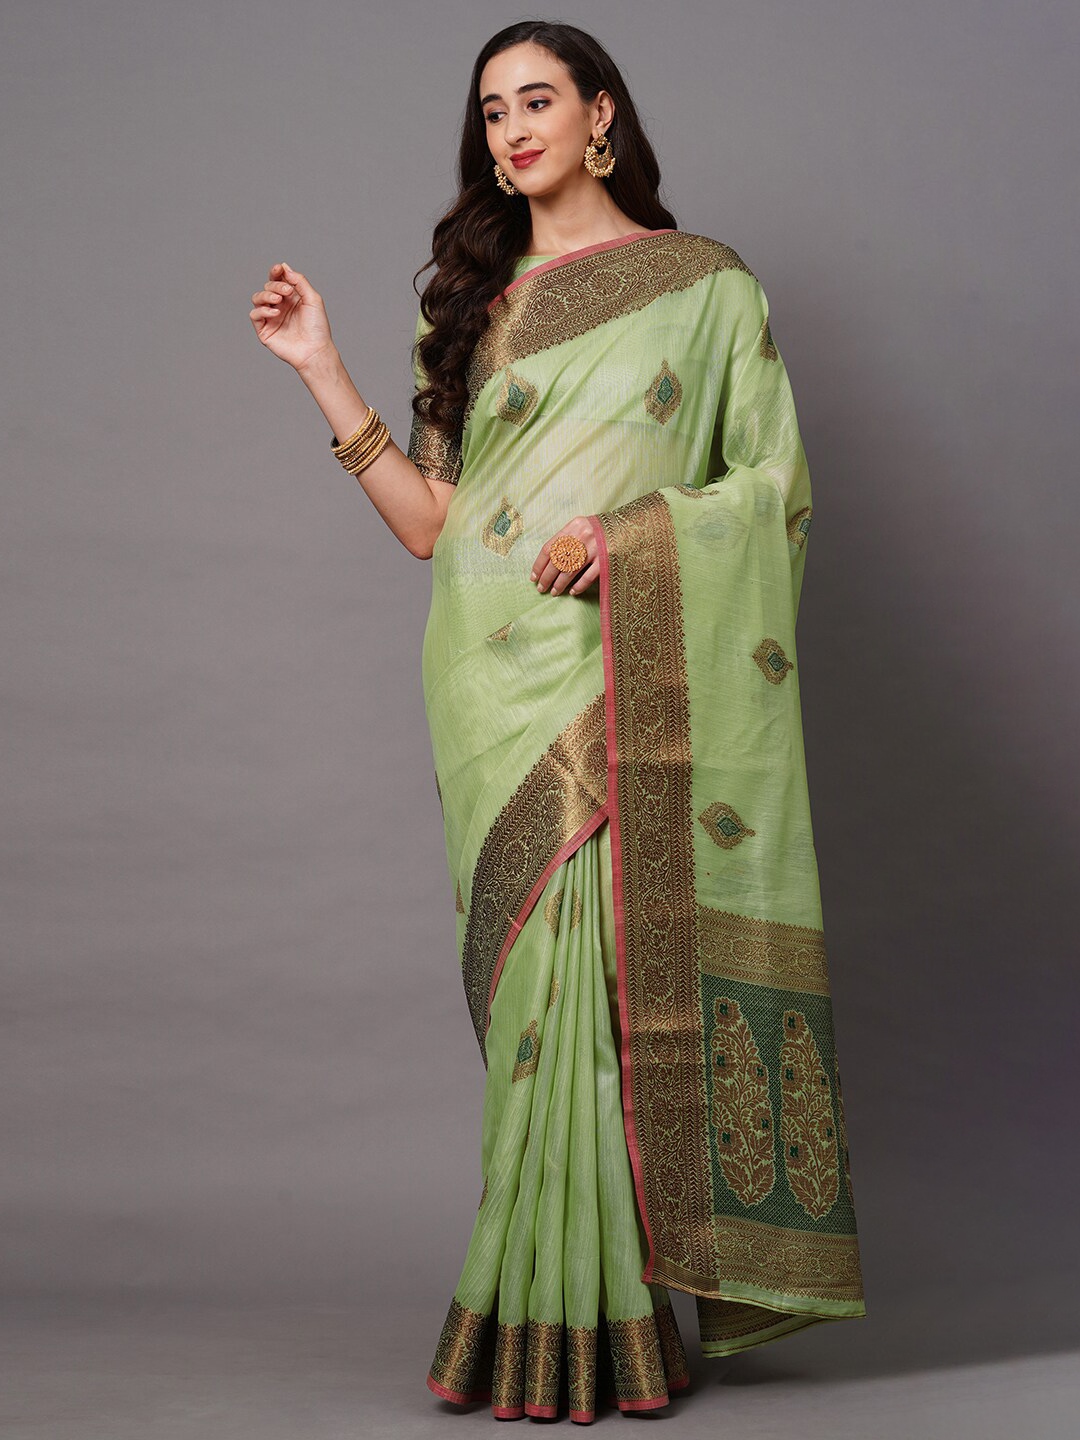 

Saree mall Green & Gold-Toned Woven Design Silk Blend Banarasi Sarees